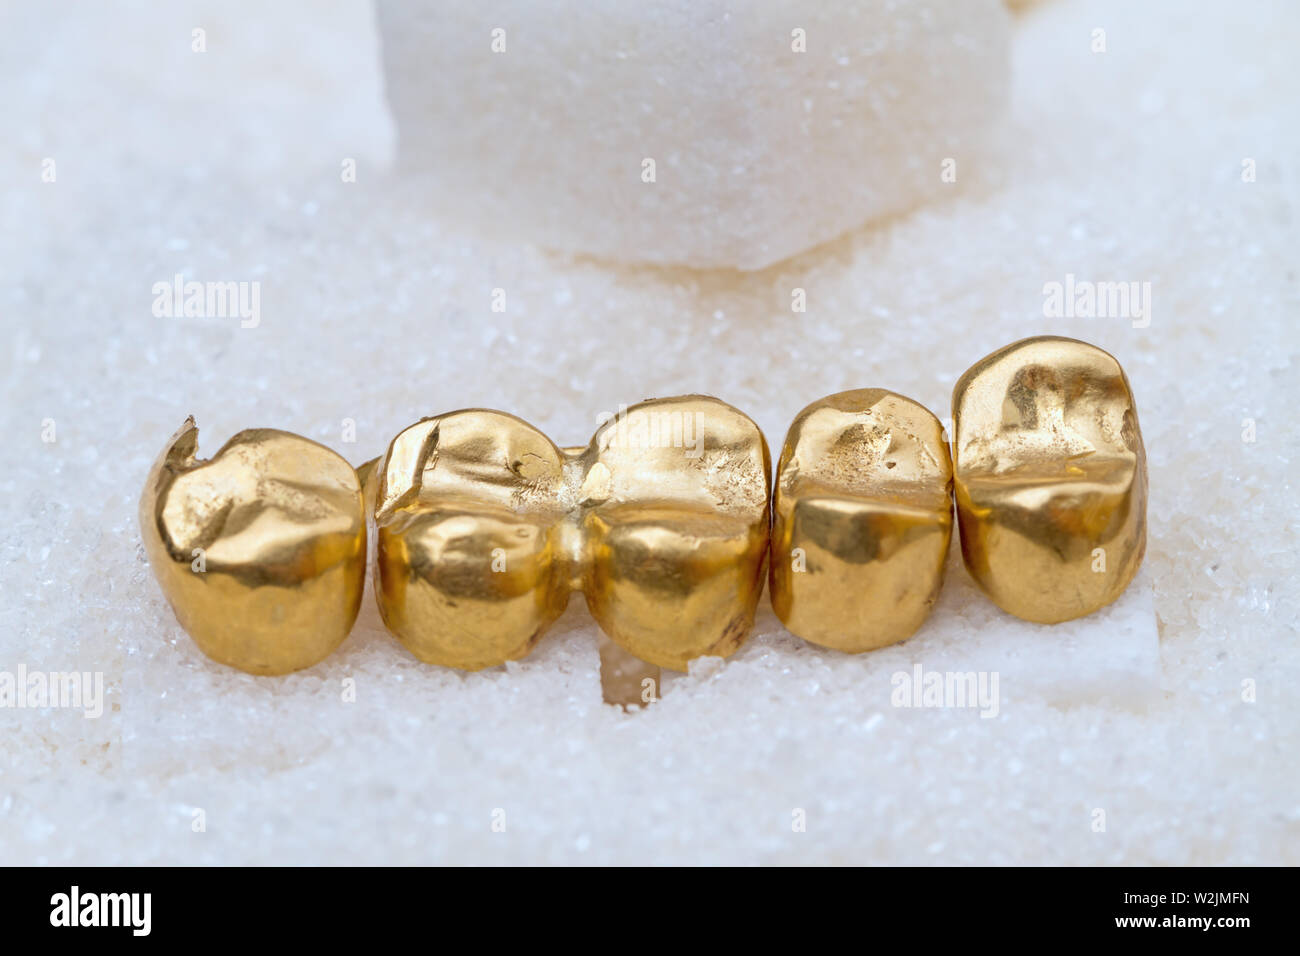 Gold Zahnkronen (prothetischen Zähne) auf Zucker Stockfotografie - Alamy